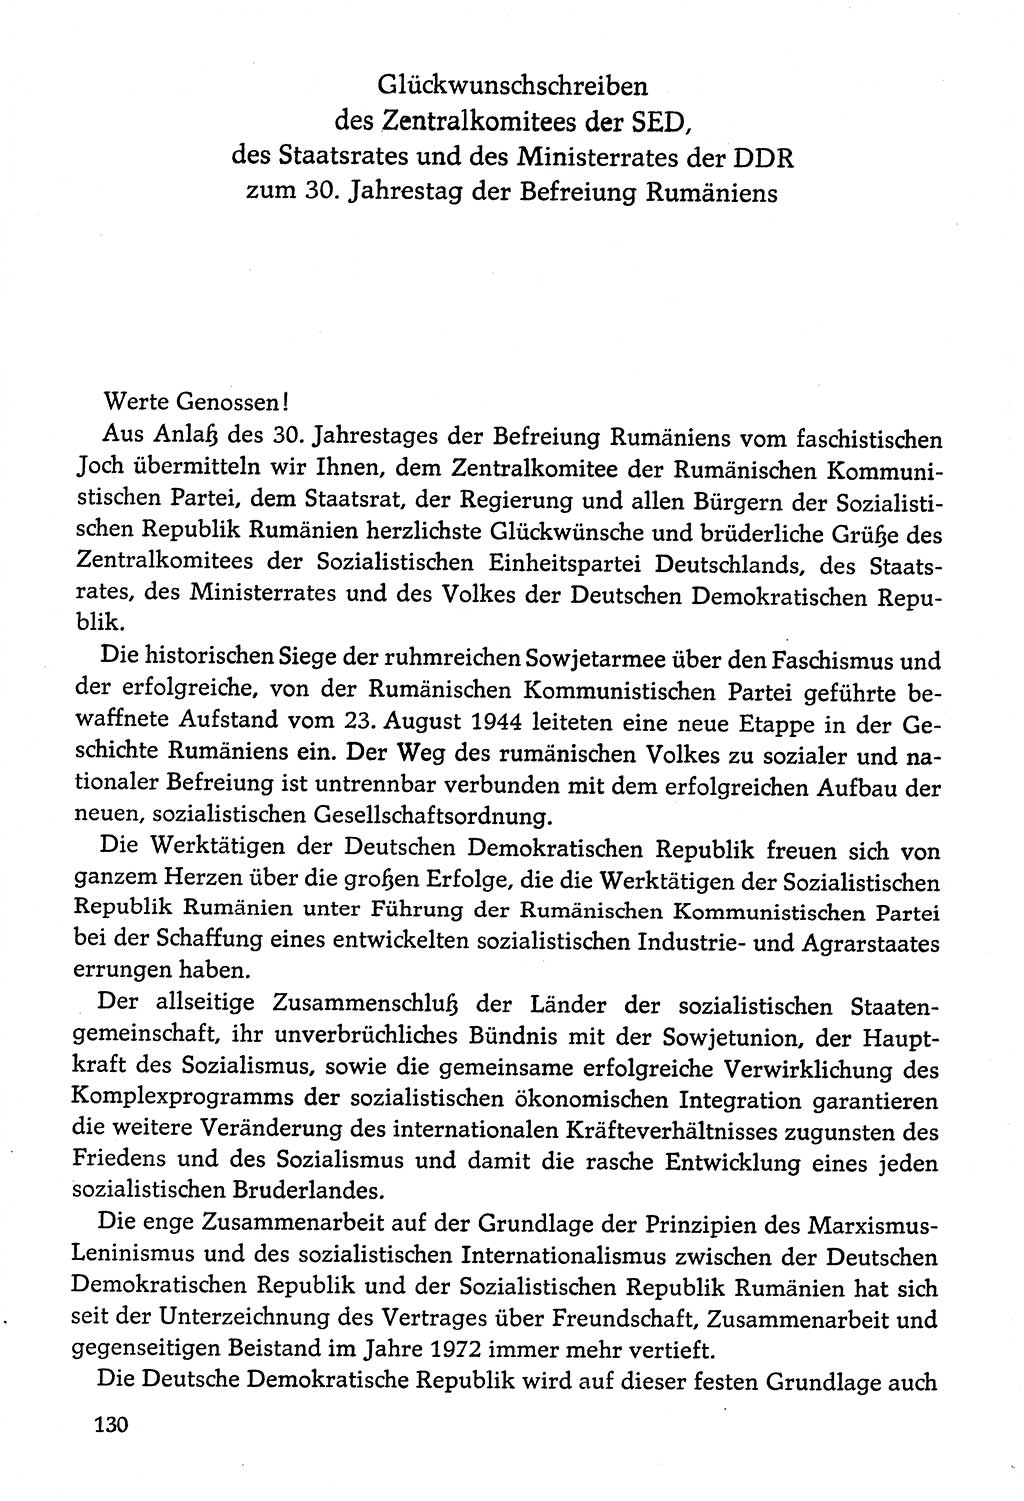 Dokumente der Sozialistischen Einheitspartei Deutschlands (SED) [Deutsche Demokratische Republik (DDR)] 1974-1975, Seite 130 (Dok. SED DDR 1978, Bd. ⅩⅤ, S. 130)